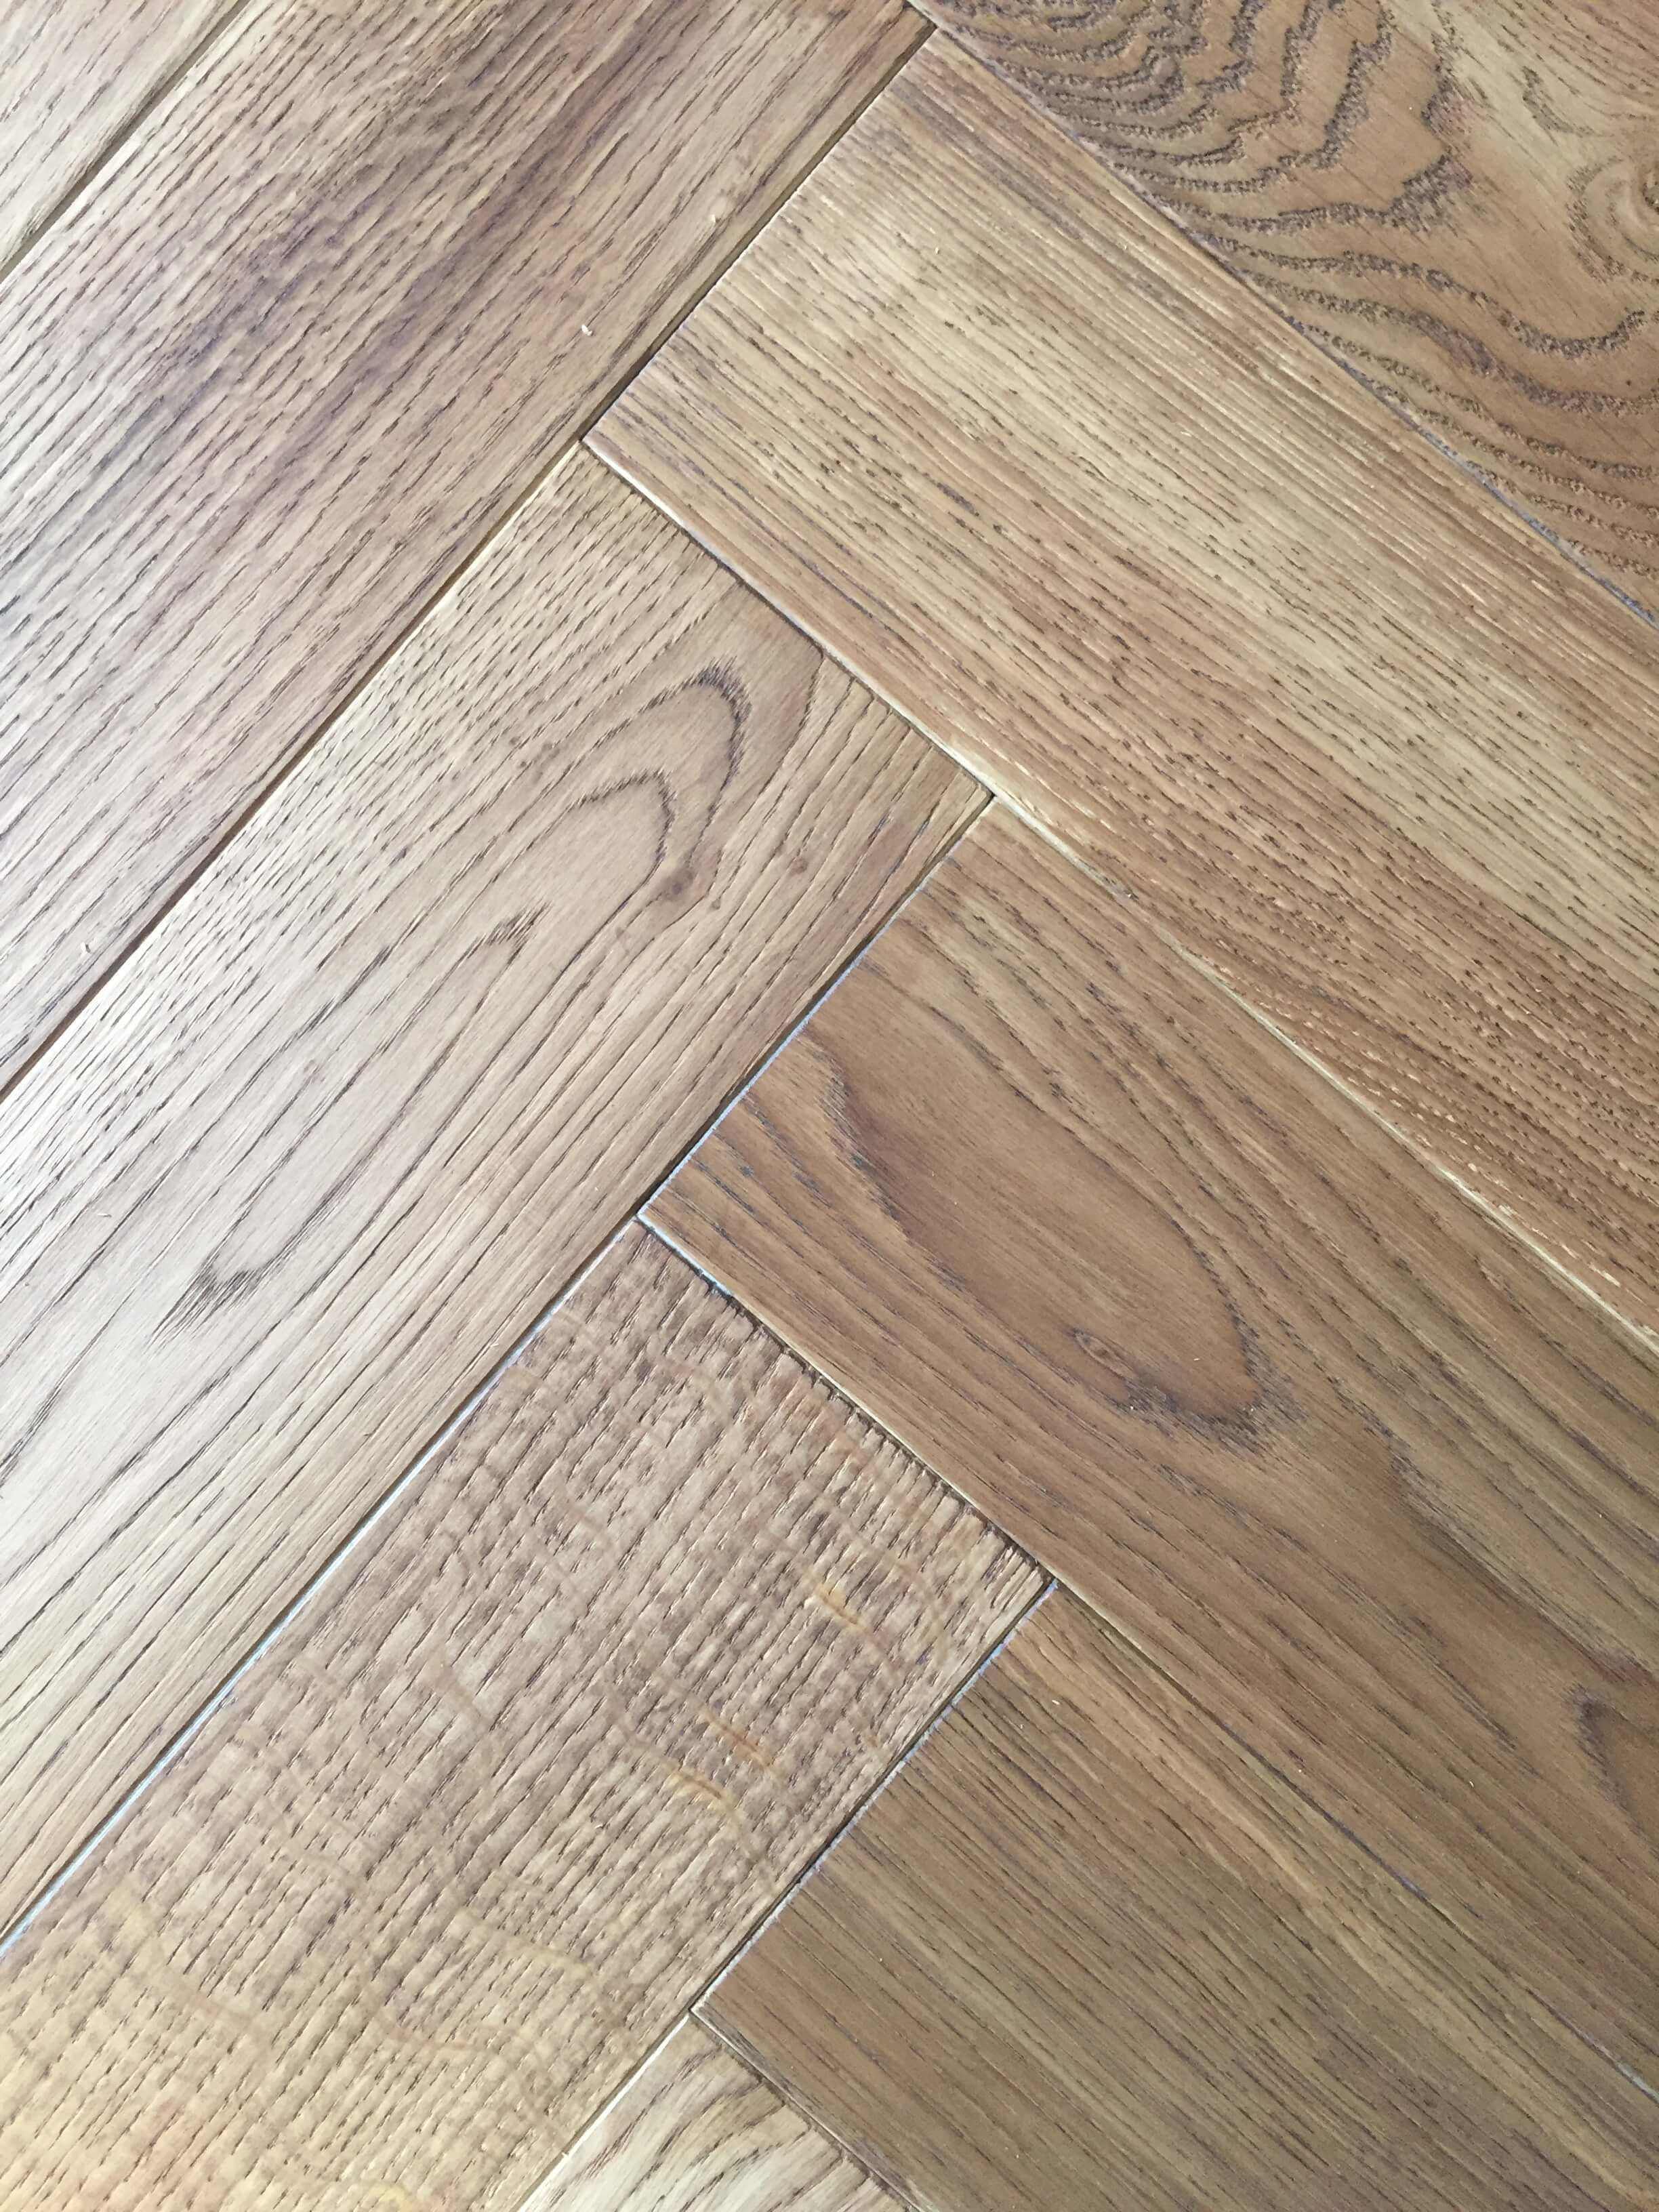 10 Fabulous Grey Hardwood Floors Images 2024 free download grey hardwood floors images of laminate hardwood flooring stanley park kraus laminate flooring in 40 light oak engineered hardwood flooring ideas